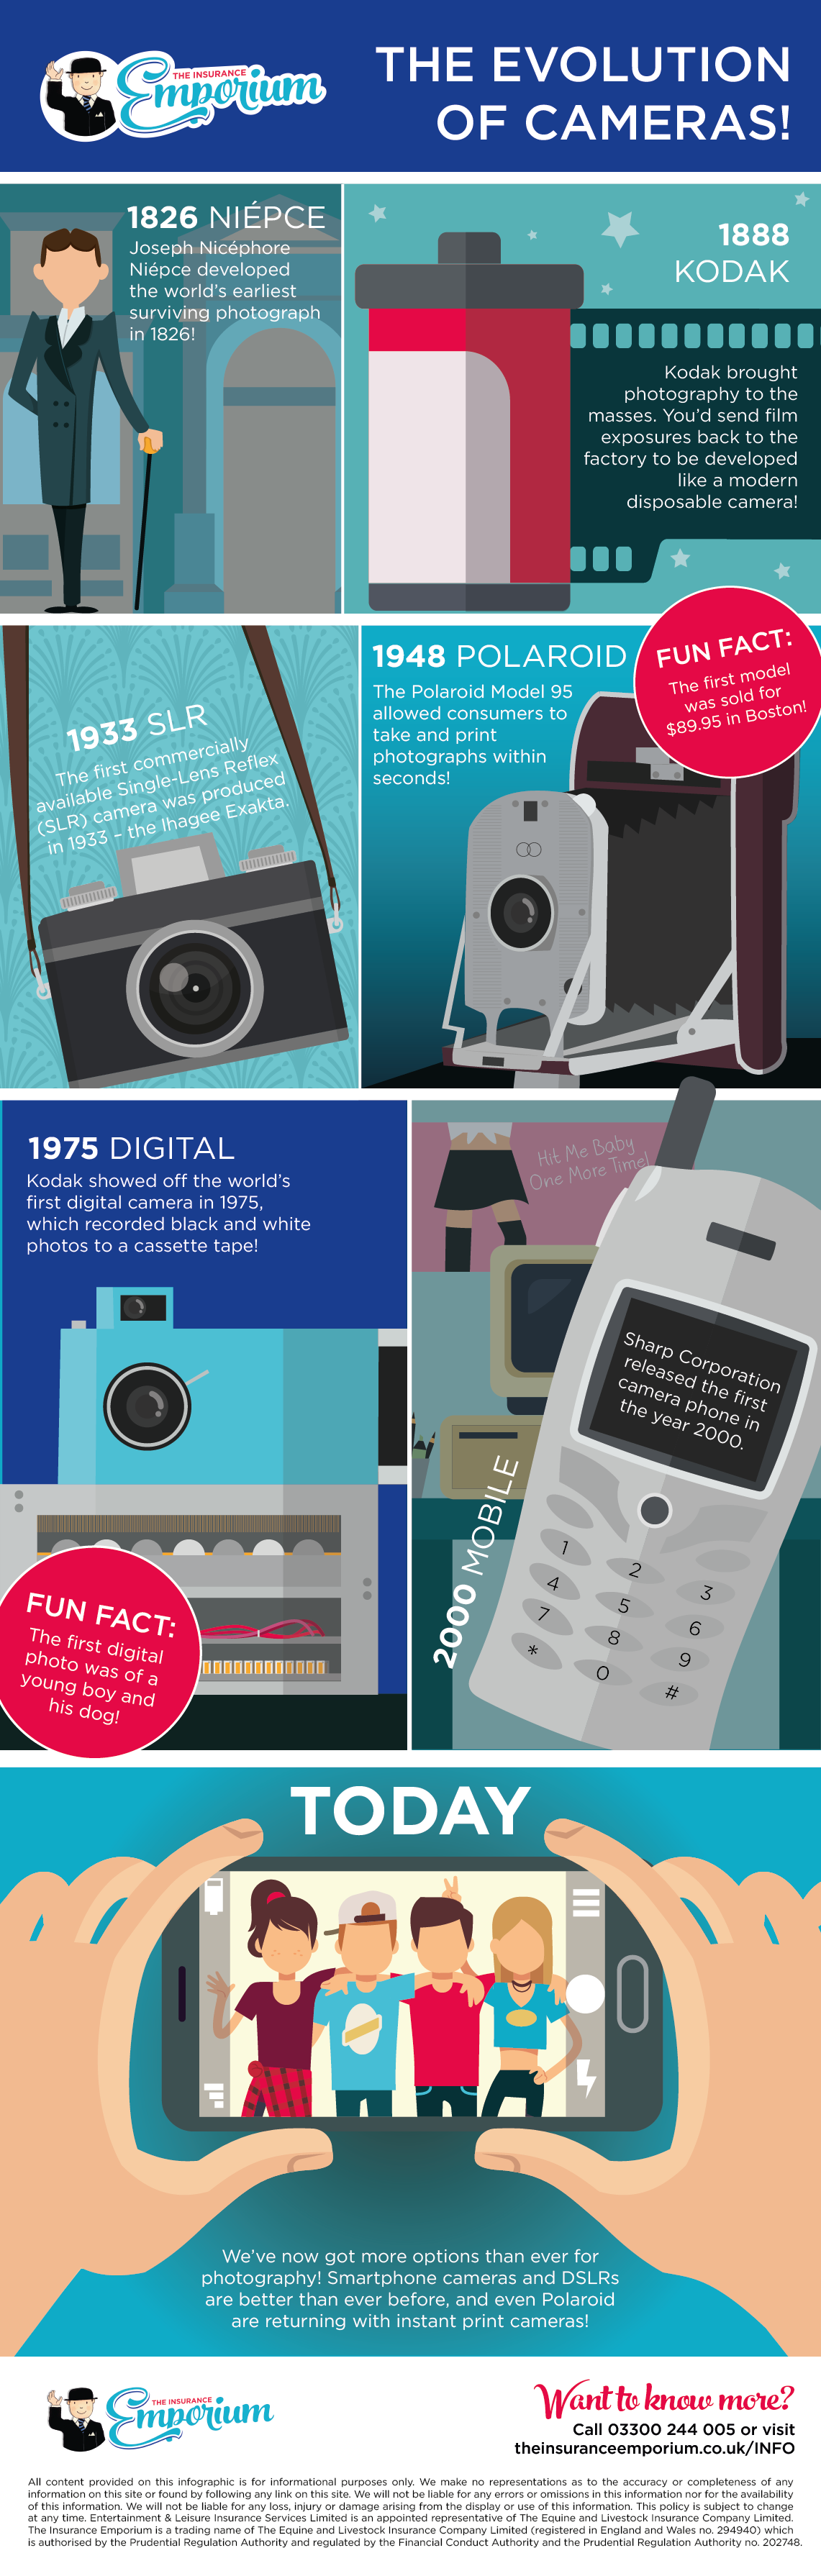 Evolution of cameras infographic